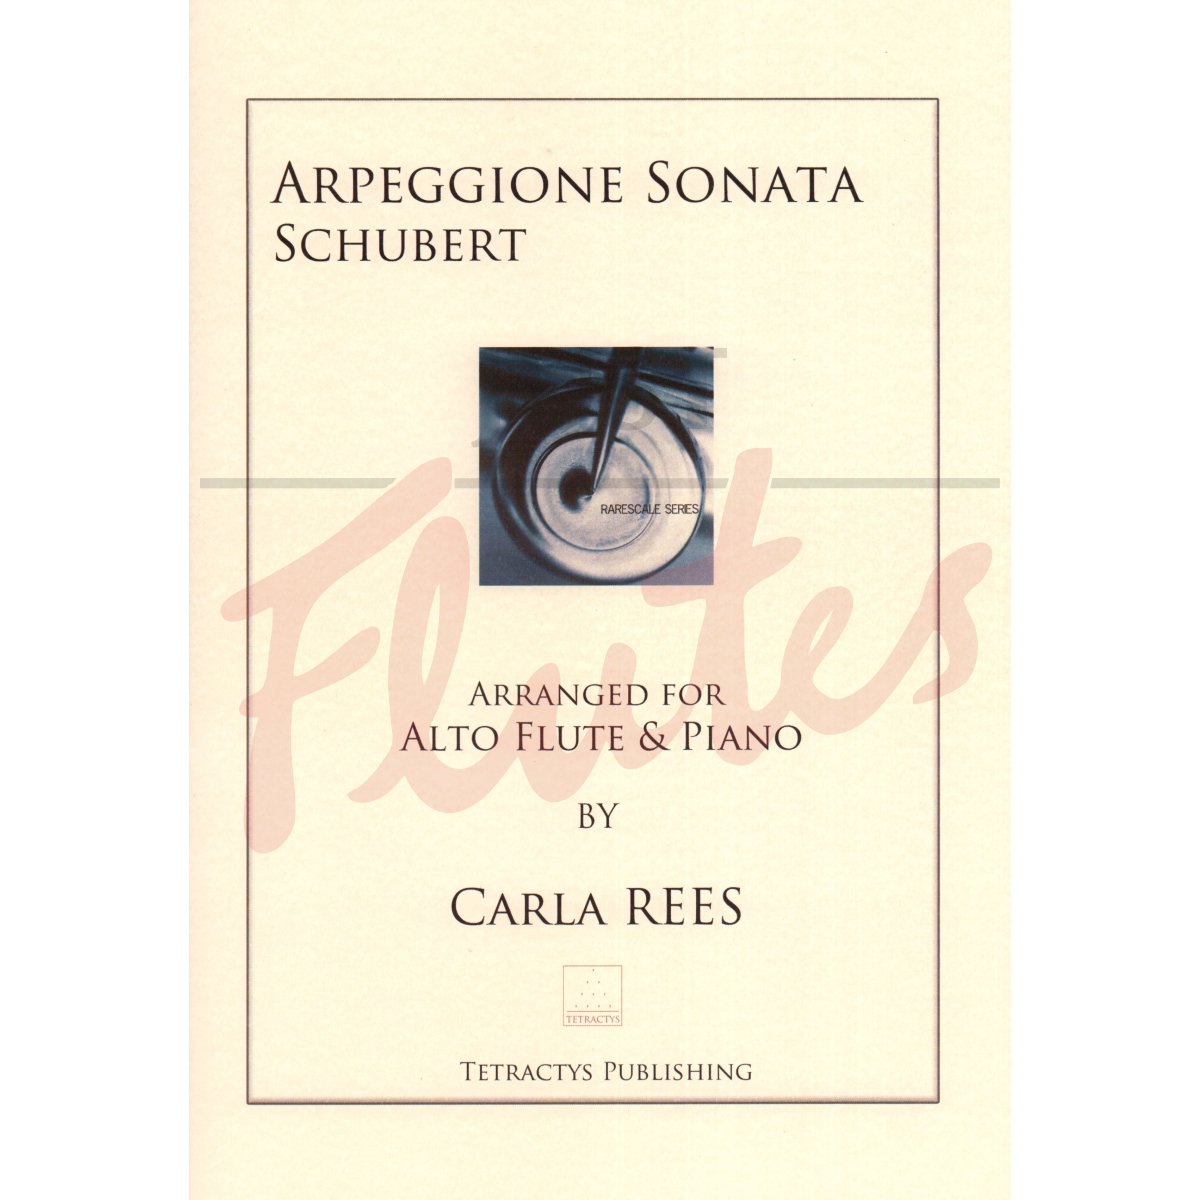 Arpeggione Sonata for Alto Flute and Piano